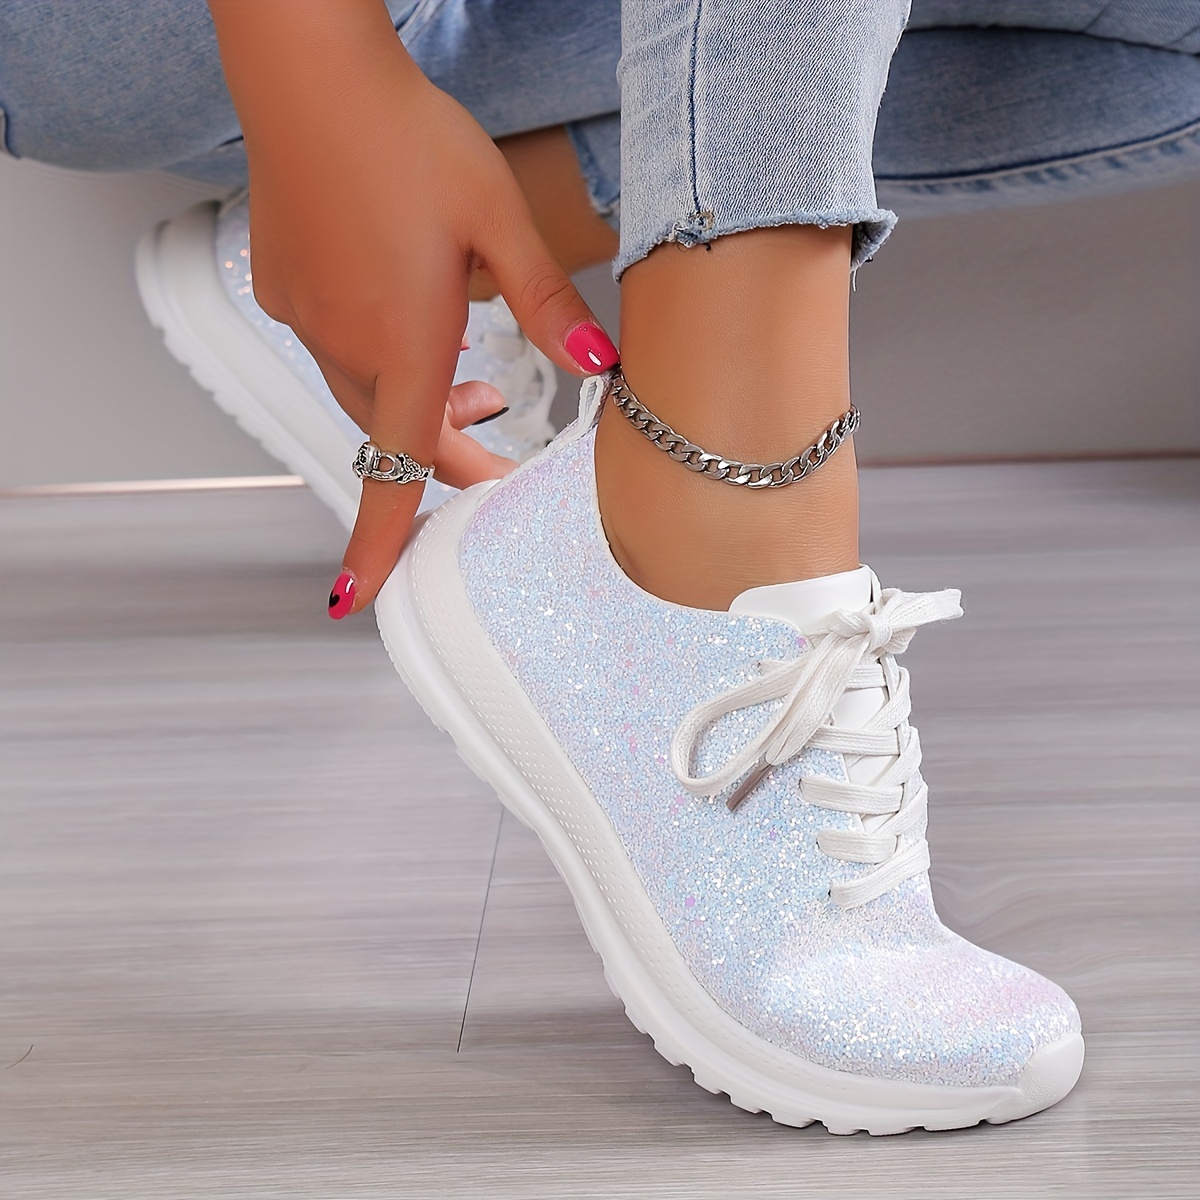 BosenHulu Walking Fashion Sneakers for Women Glitter